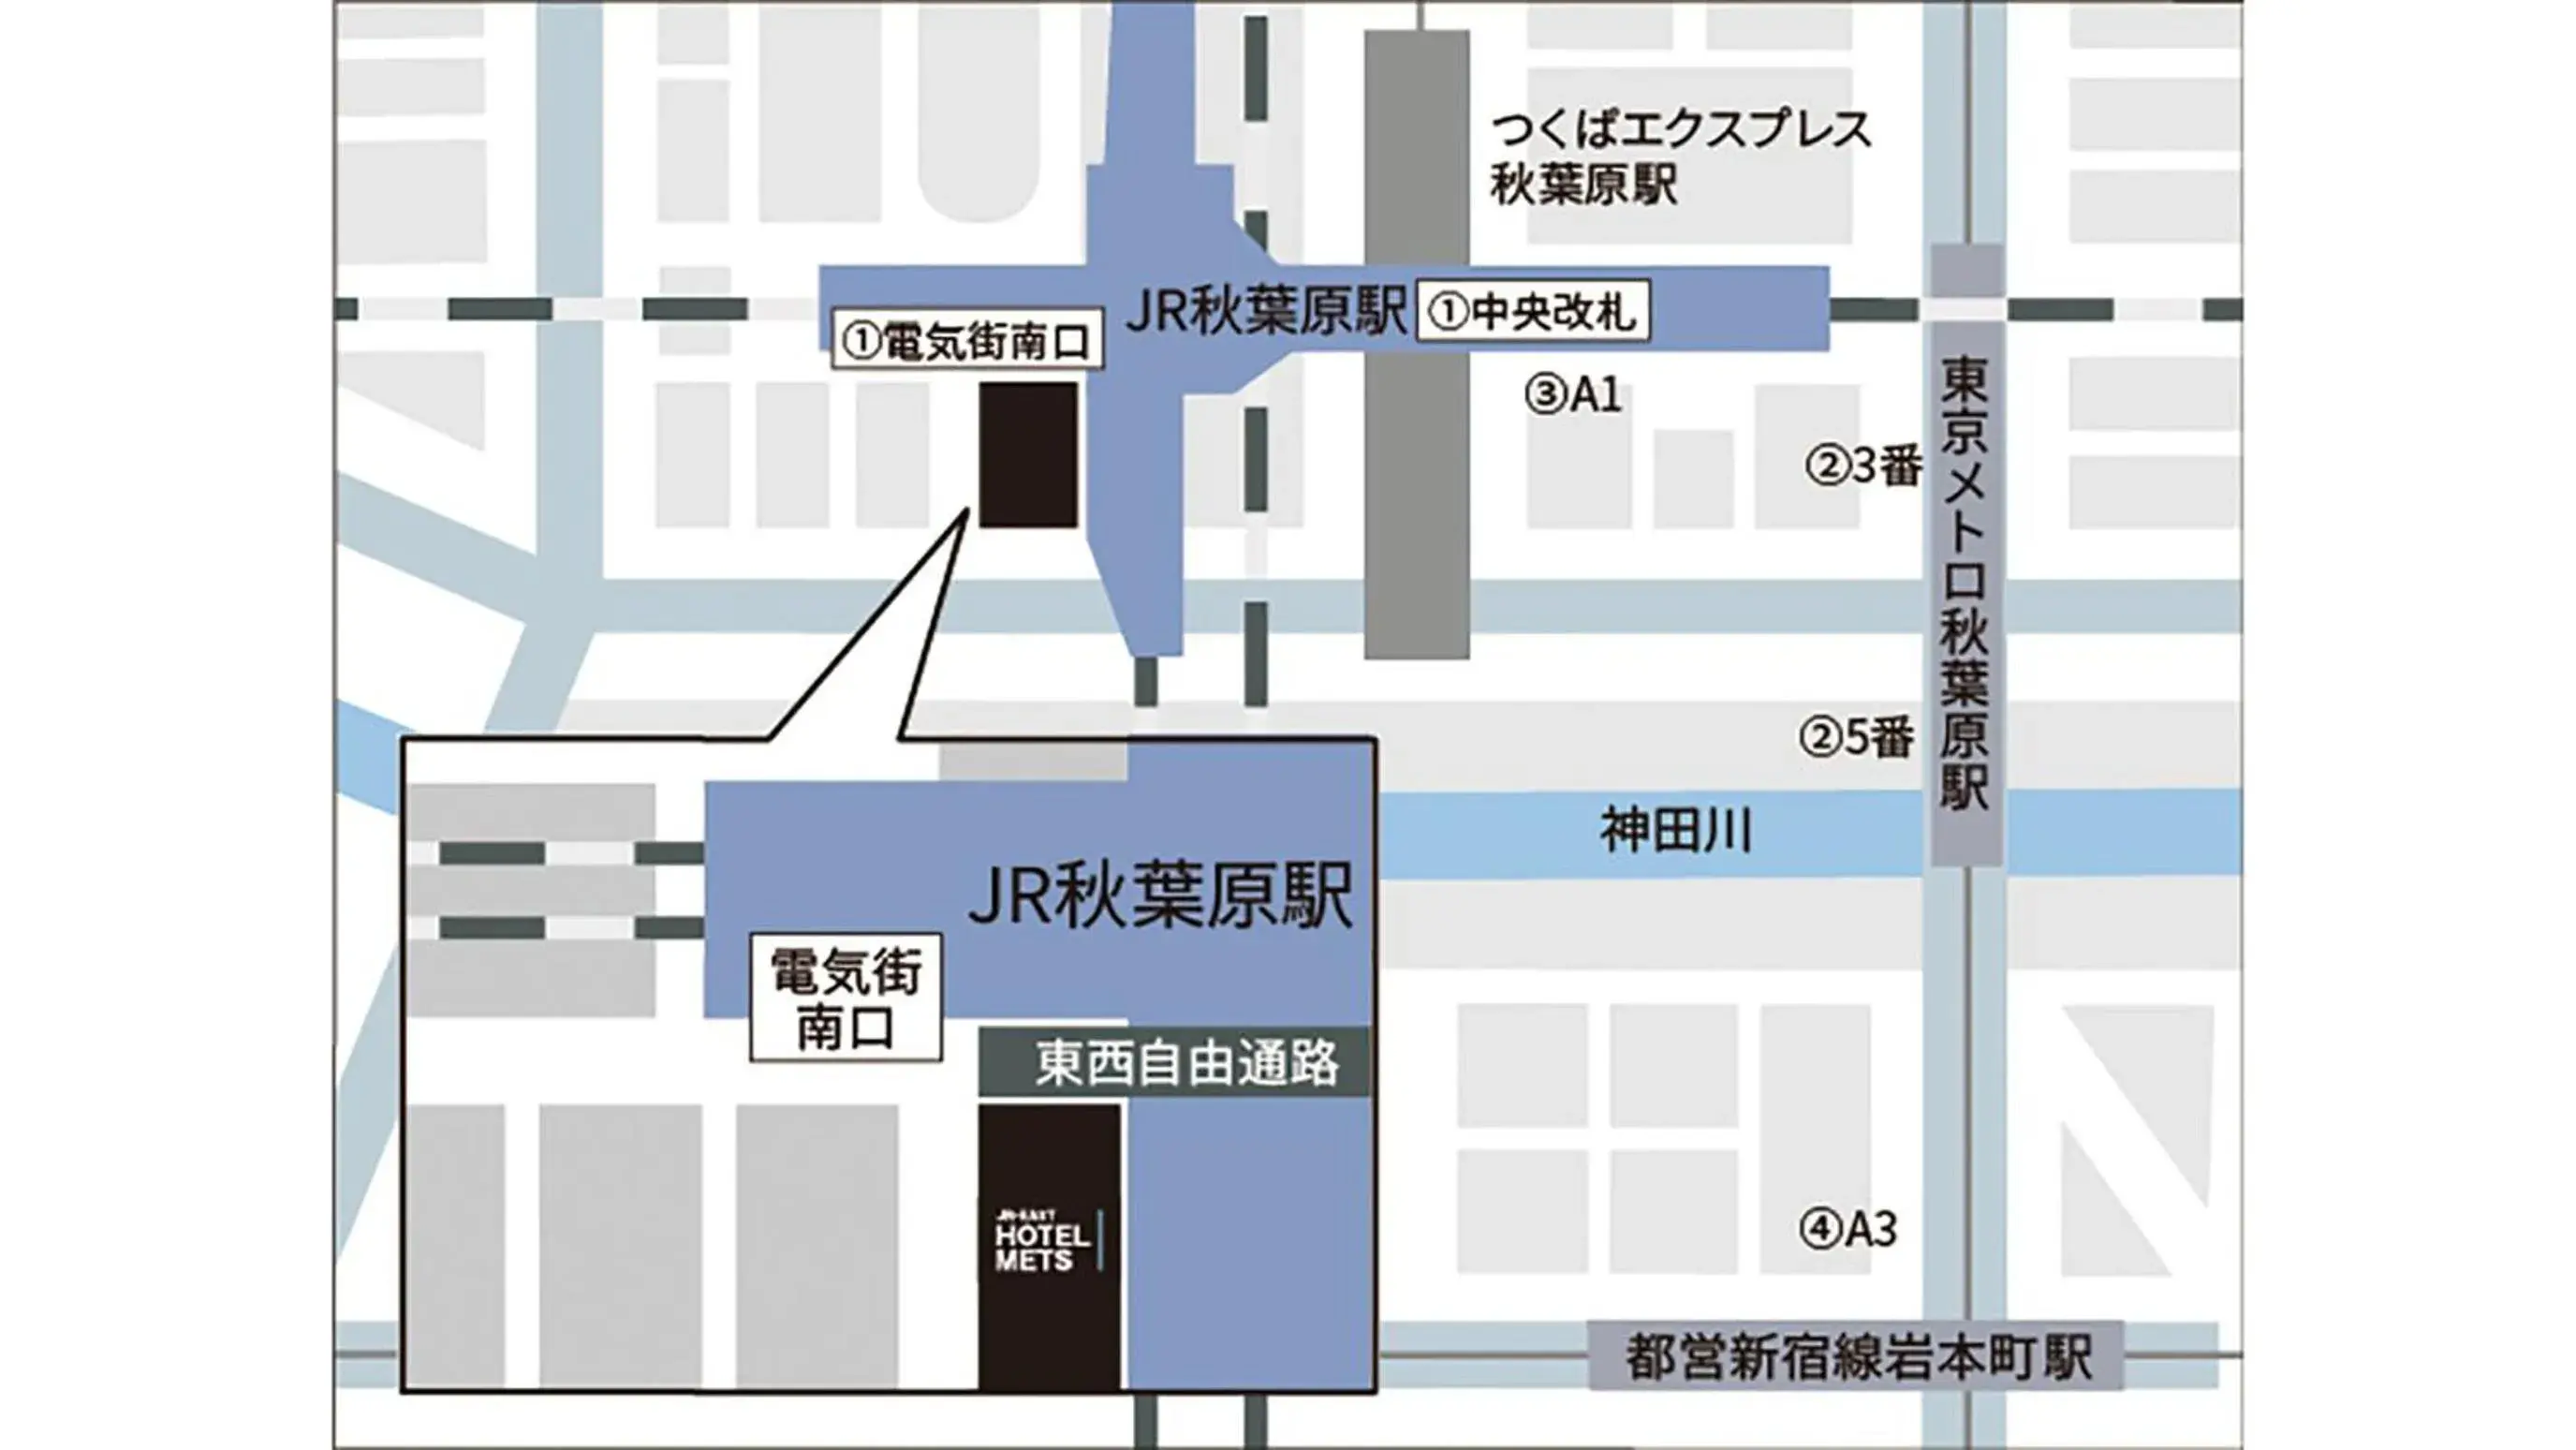 Floor Plan in JR-East Hotel Mets Akihabara